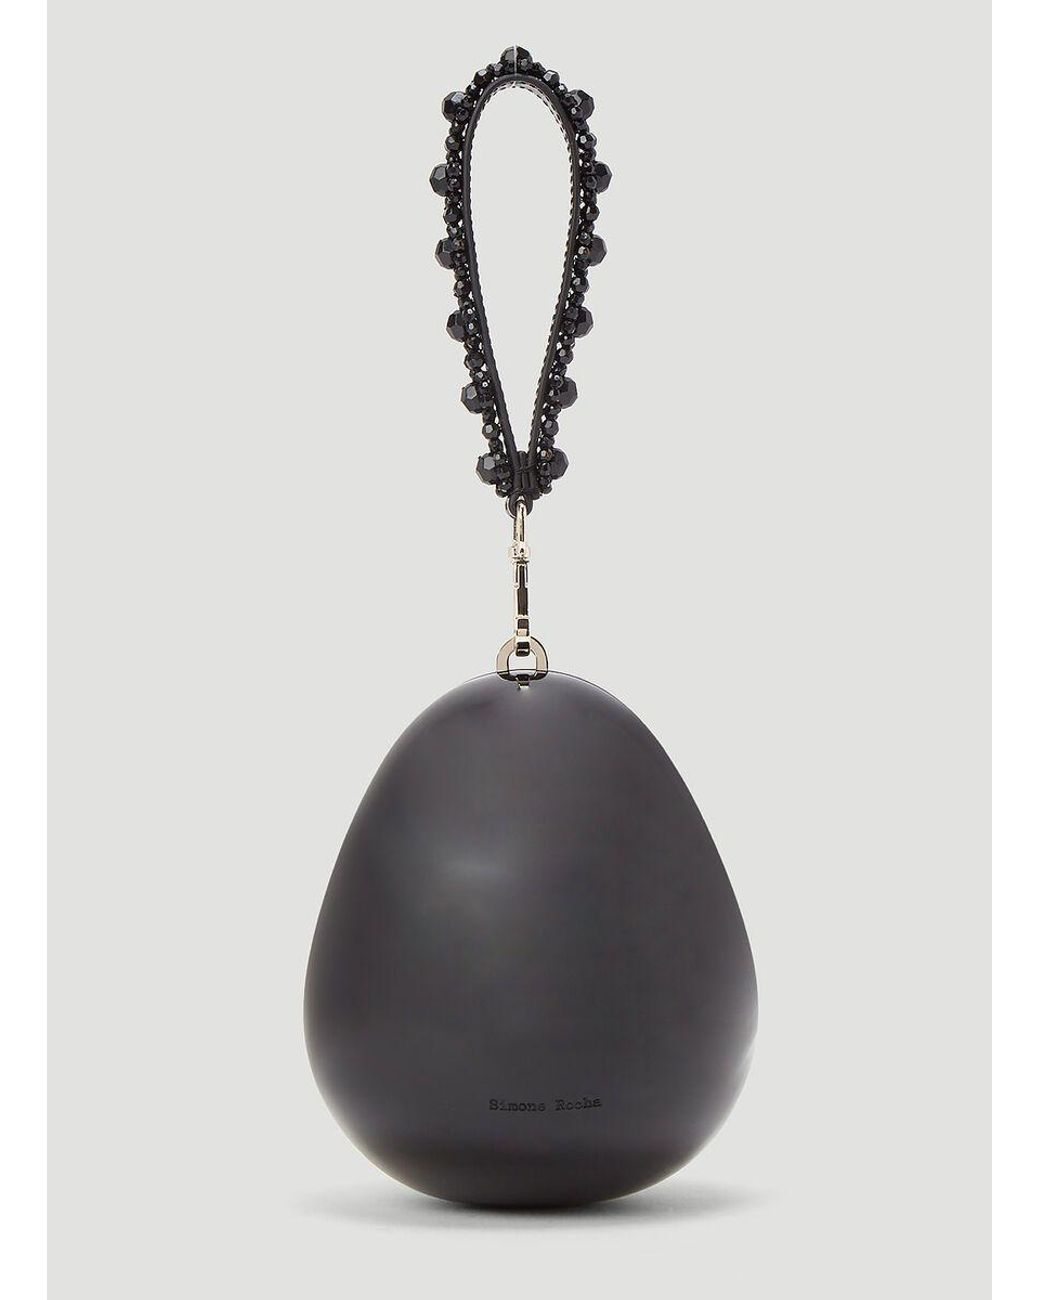 Simone Rocha Leather Mini Egg-Shaped Clutch Bag in Black - Lyst